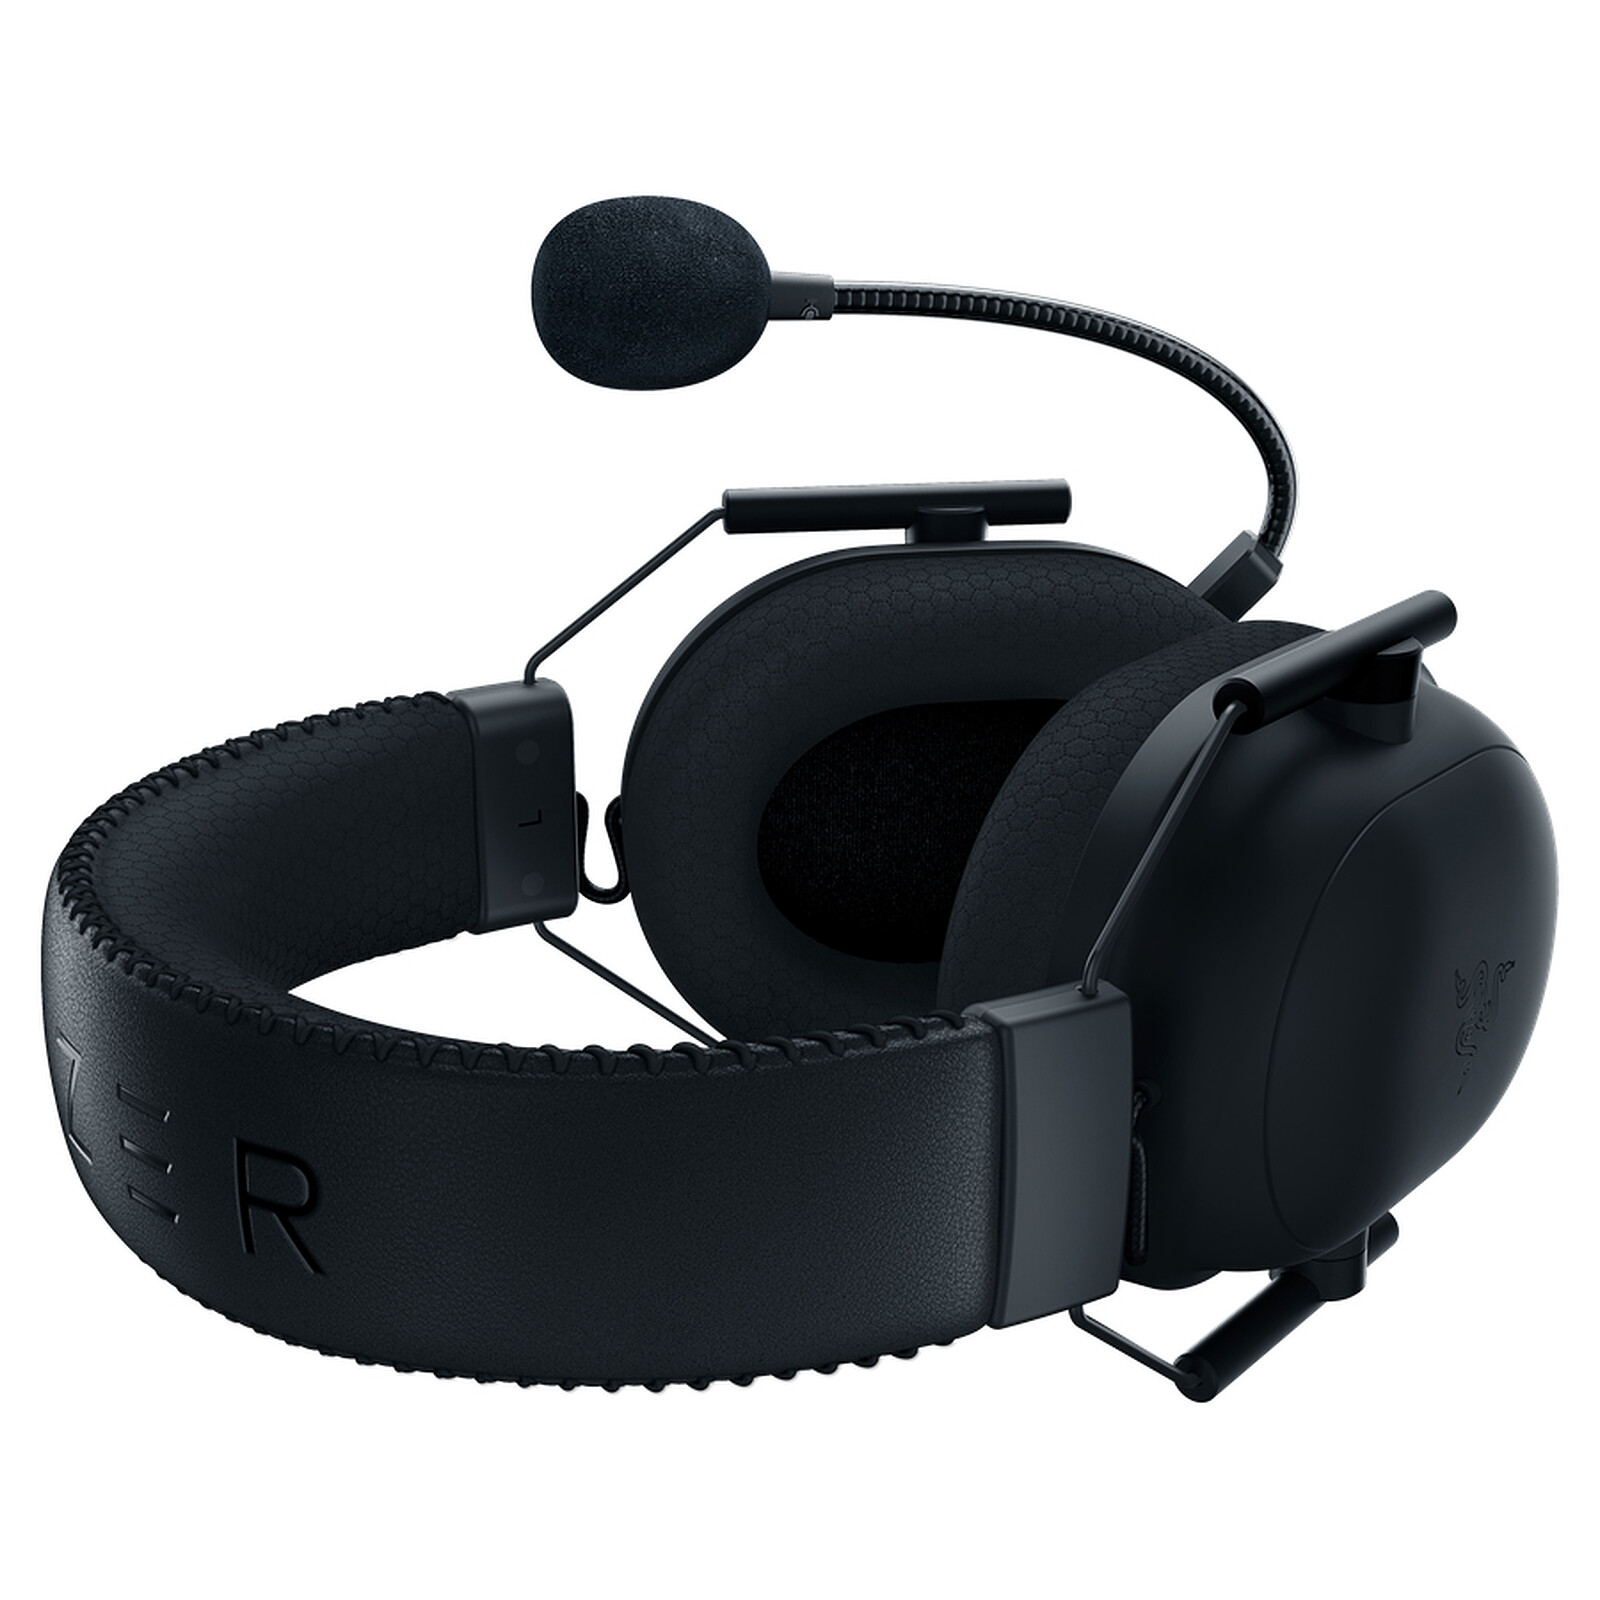 Razer BlackShark V2 Pro Auriculares Inalámbricos para juegos con Micró